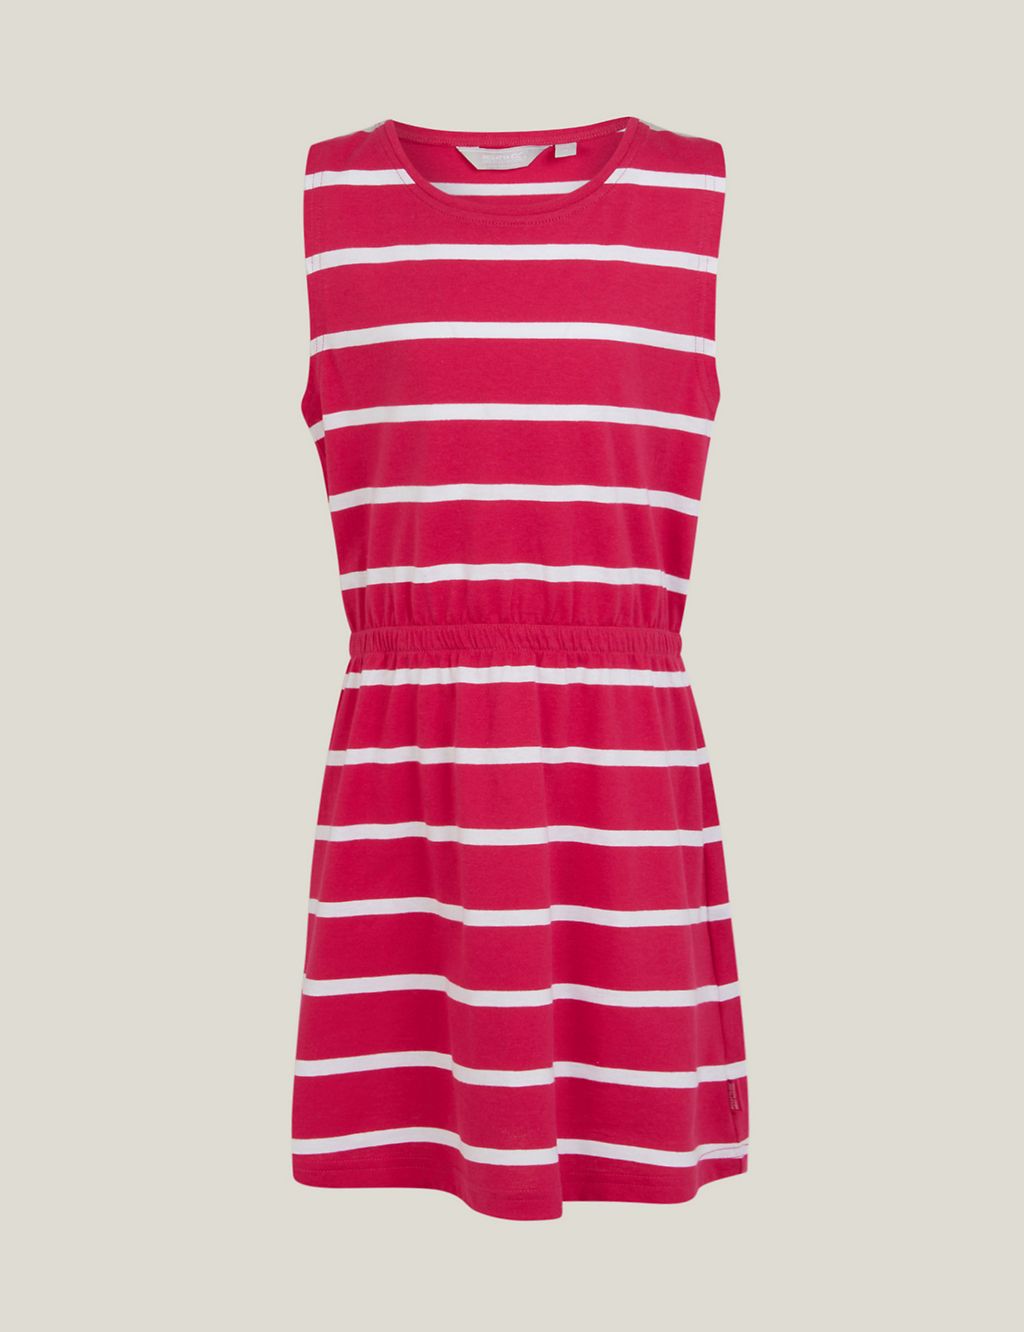 Beylina Cotton Rich Striped Dress (3-14 Yrs) 1 of 5